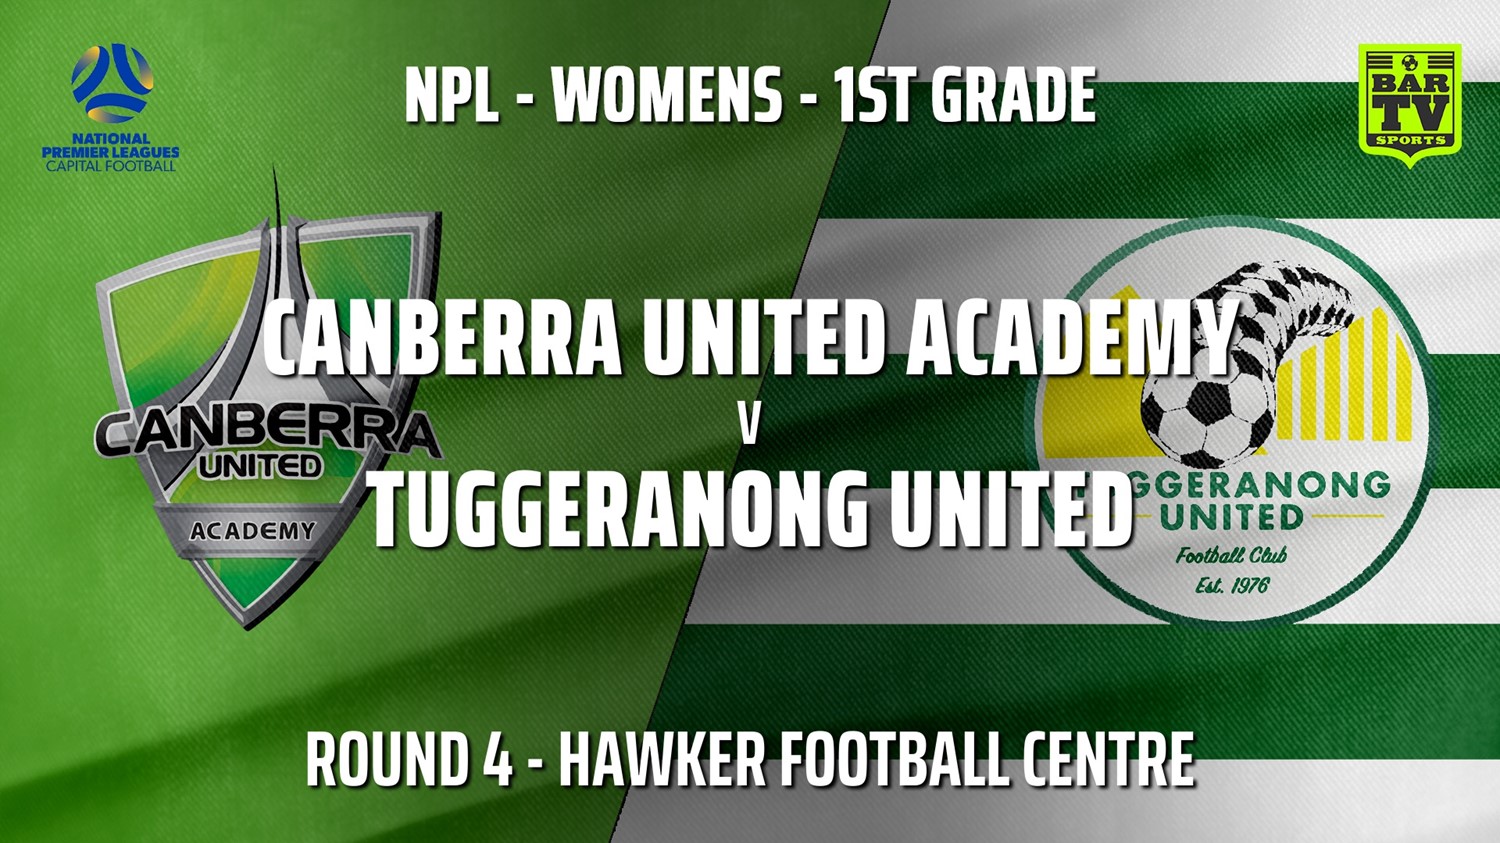 210502-NPLW - Capital Round 4 - Canberra United Academy v Tuggeranong United FC (women) Minigame Slate Image